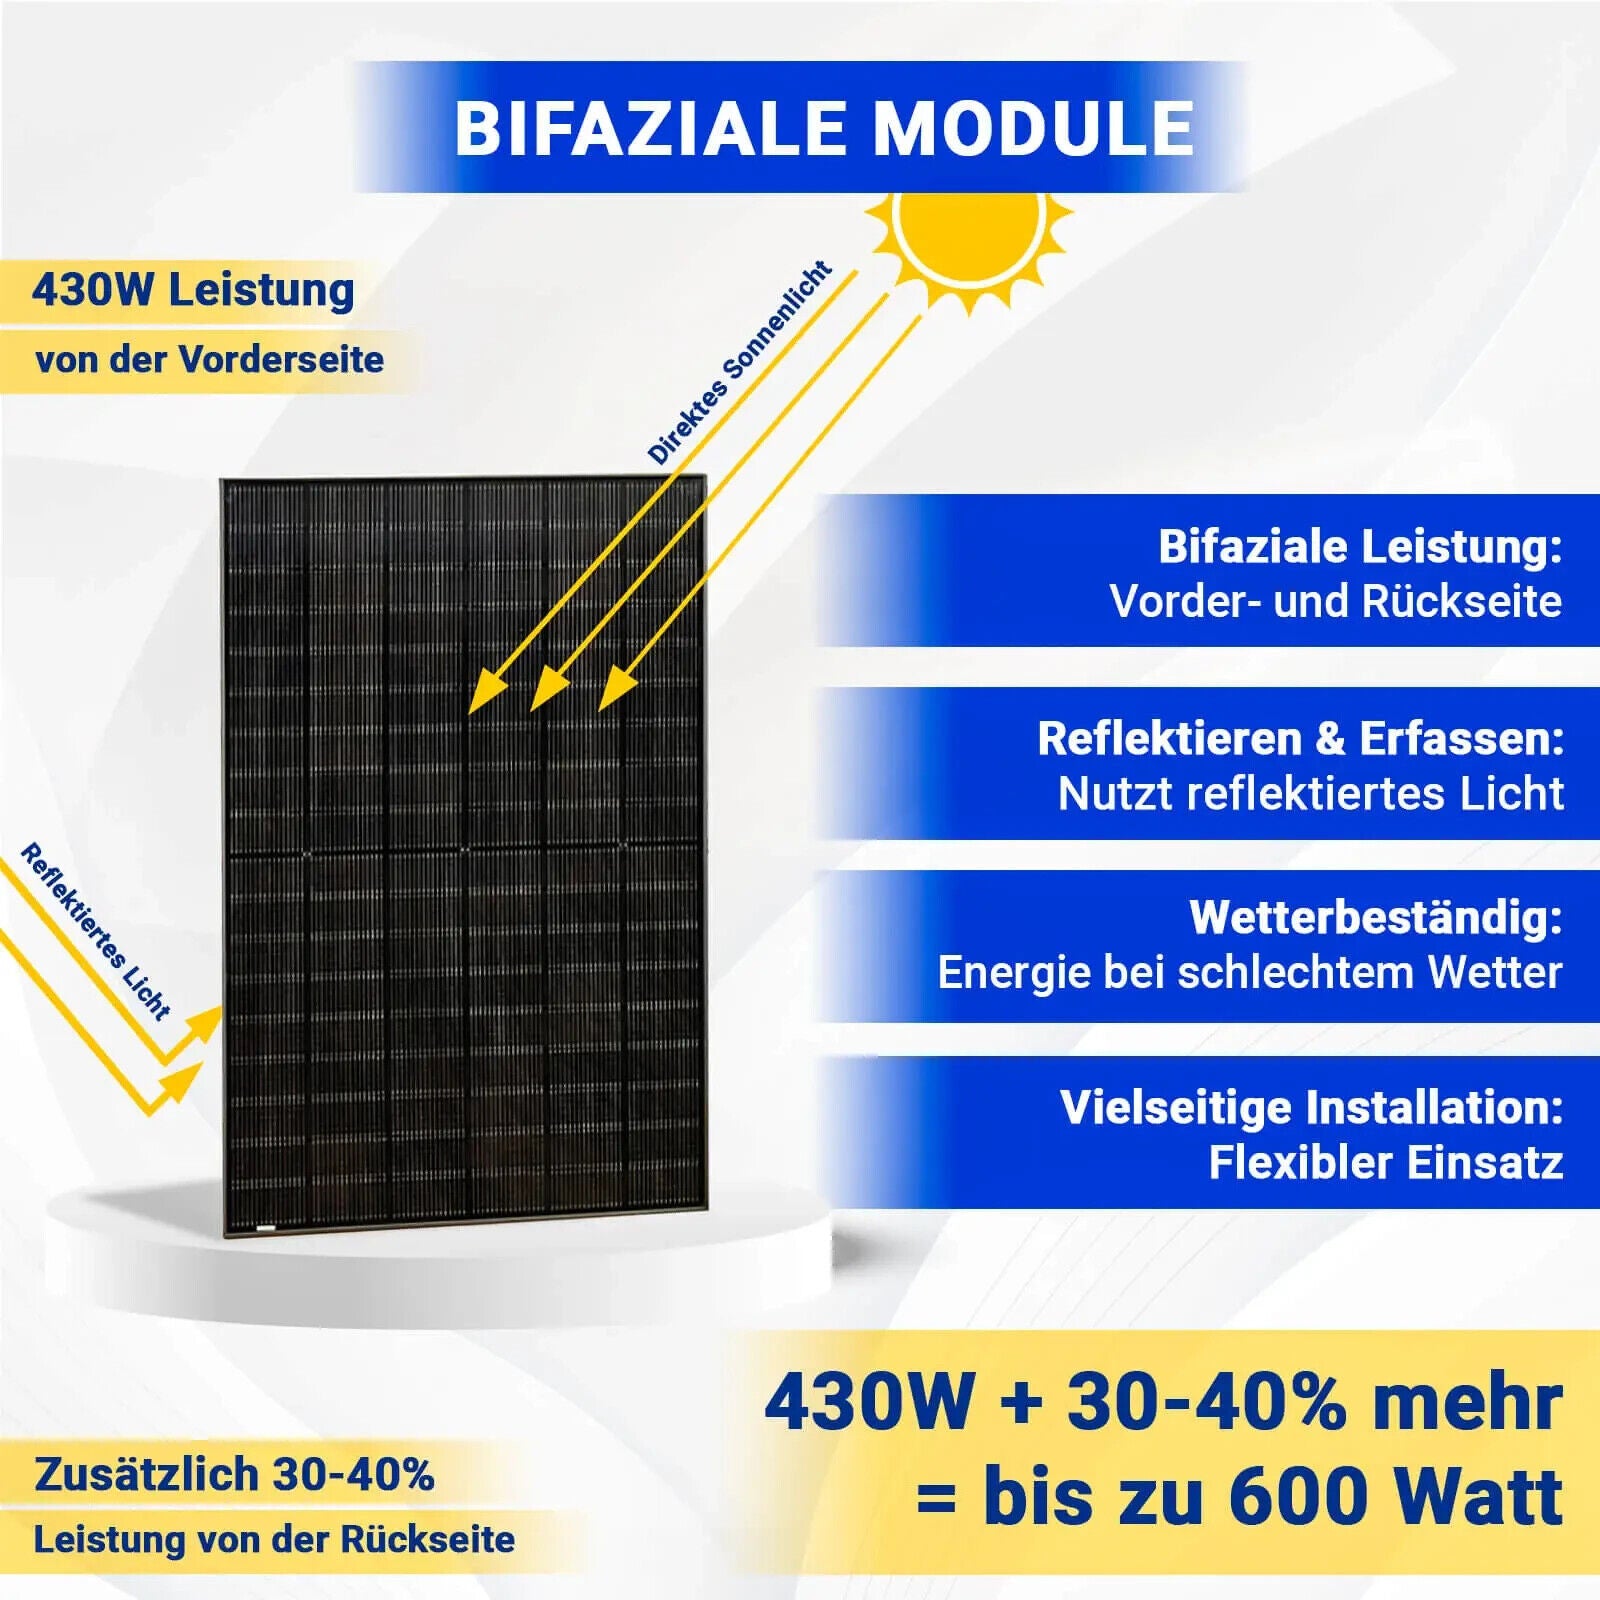 430W Bifazial Solarmodul Glas-Glas Full Black - PV Modul